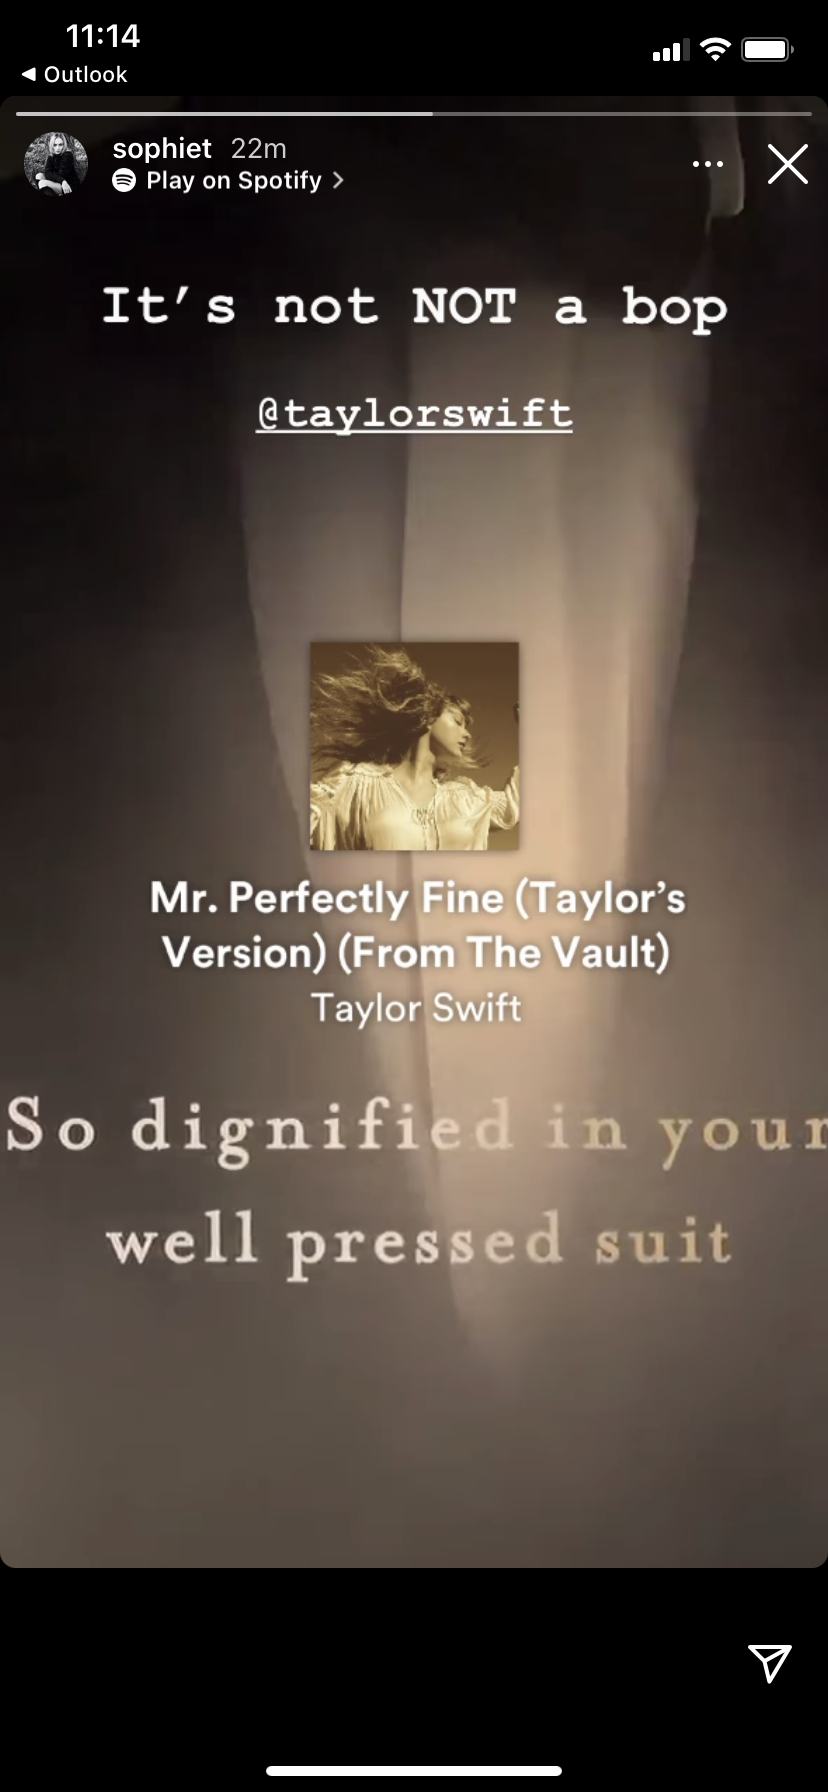 La nueva canción de Taylor Swift "Mr. Perfectly Fine" es 100% sobre Joe Jonas